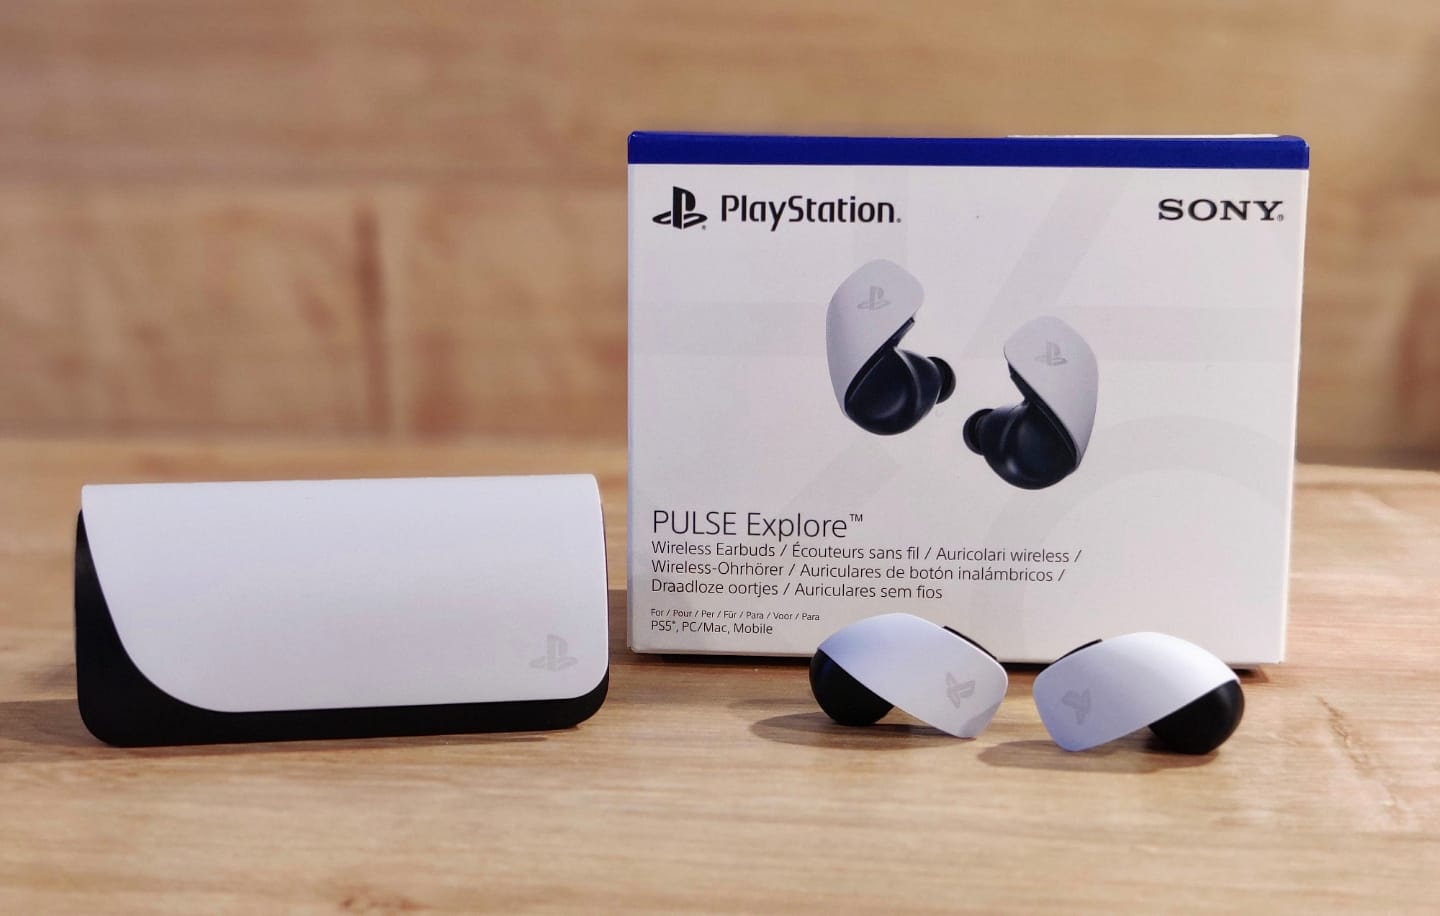 Prise en main de PlayStation Portal, des écouteurs sans fil Pulse Explore  et du casque-micro sans fil Pulse Elite – PlayStation Blog en français